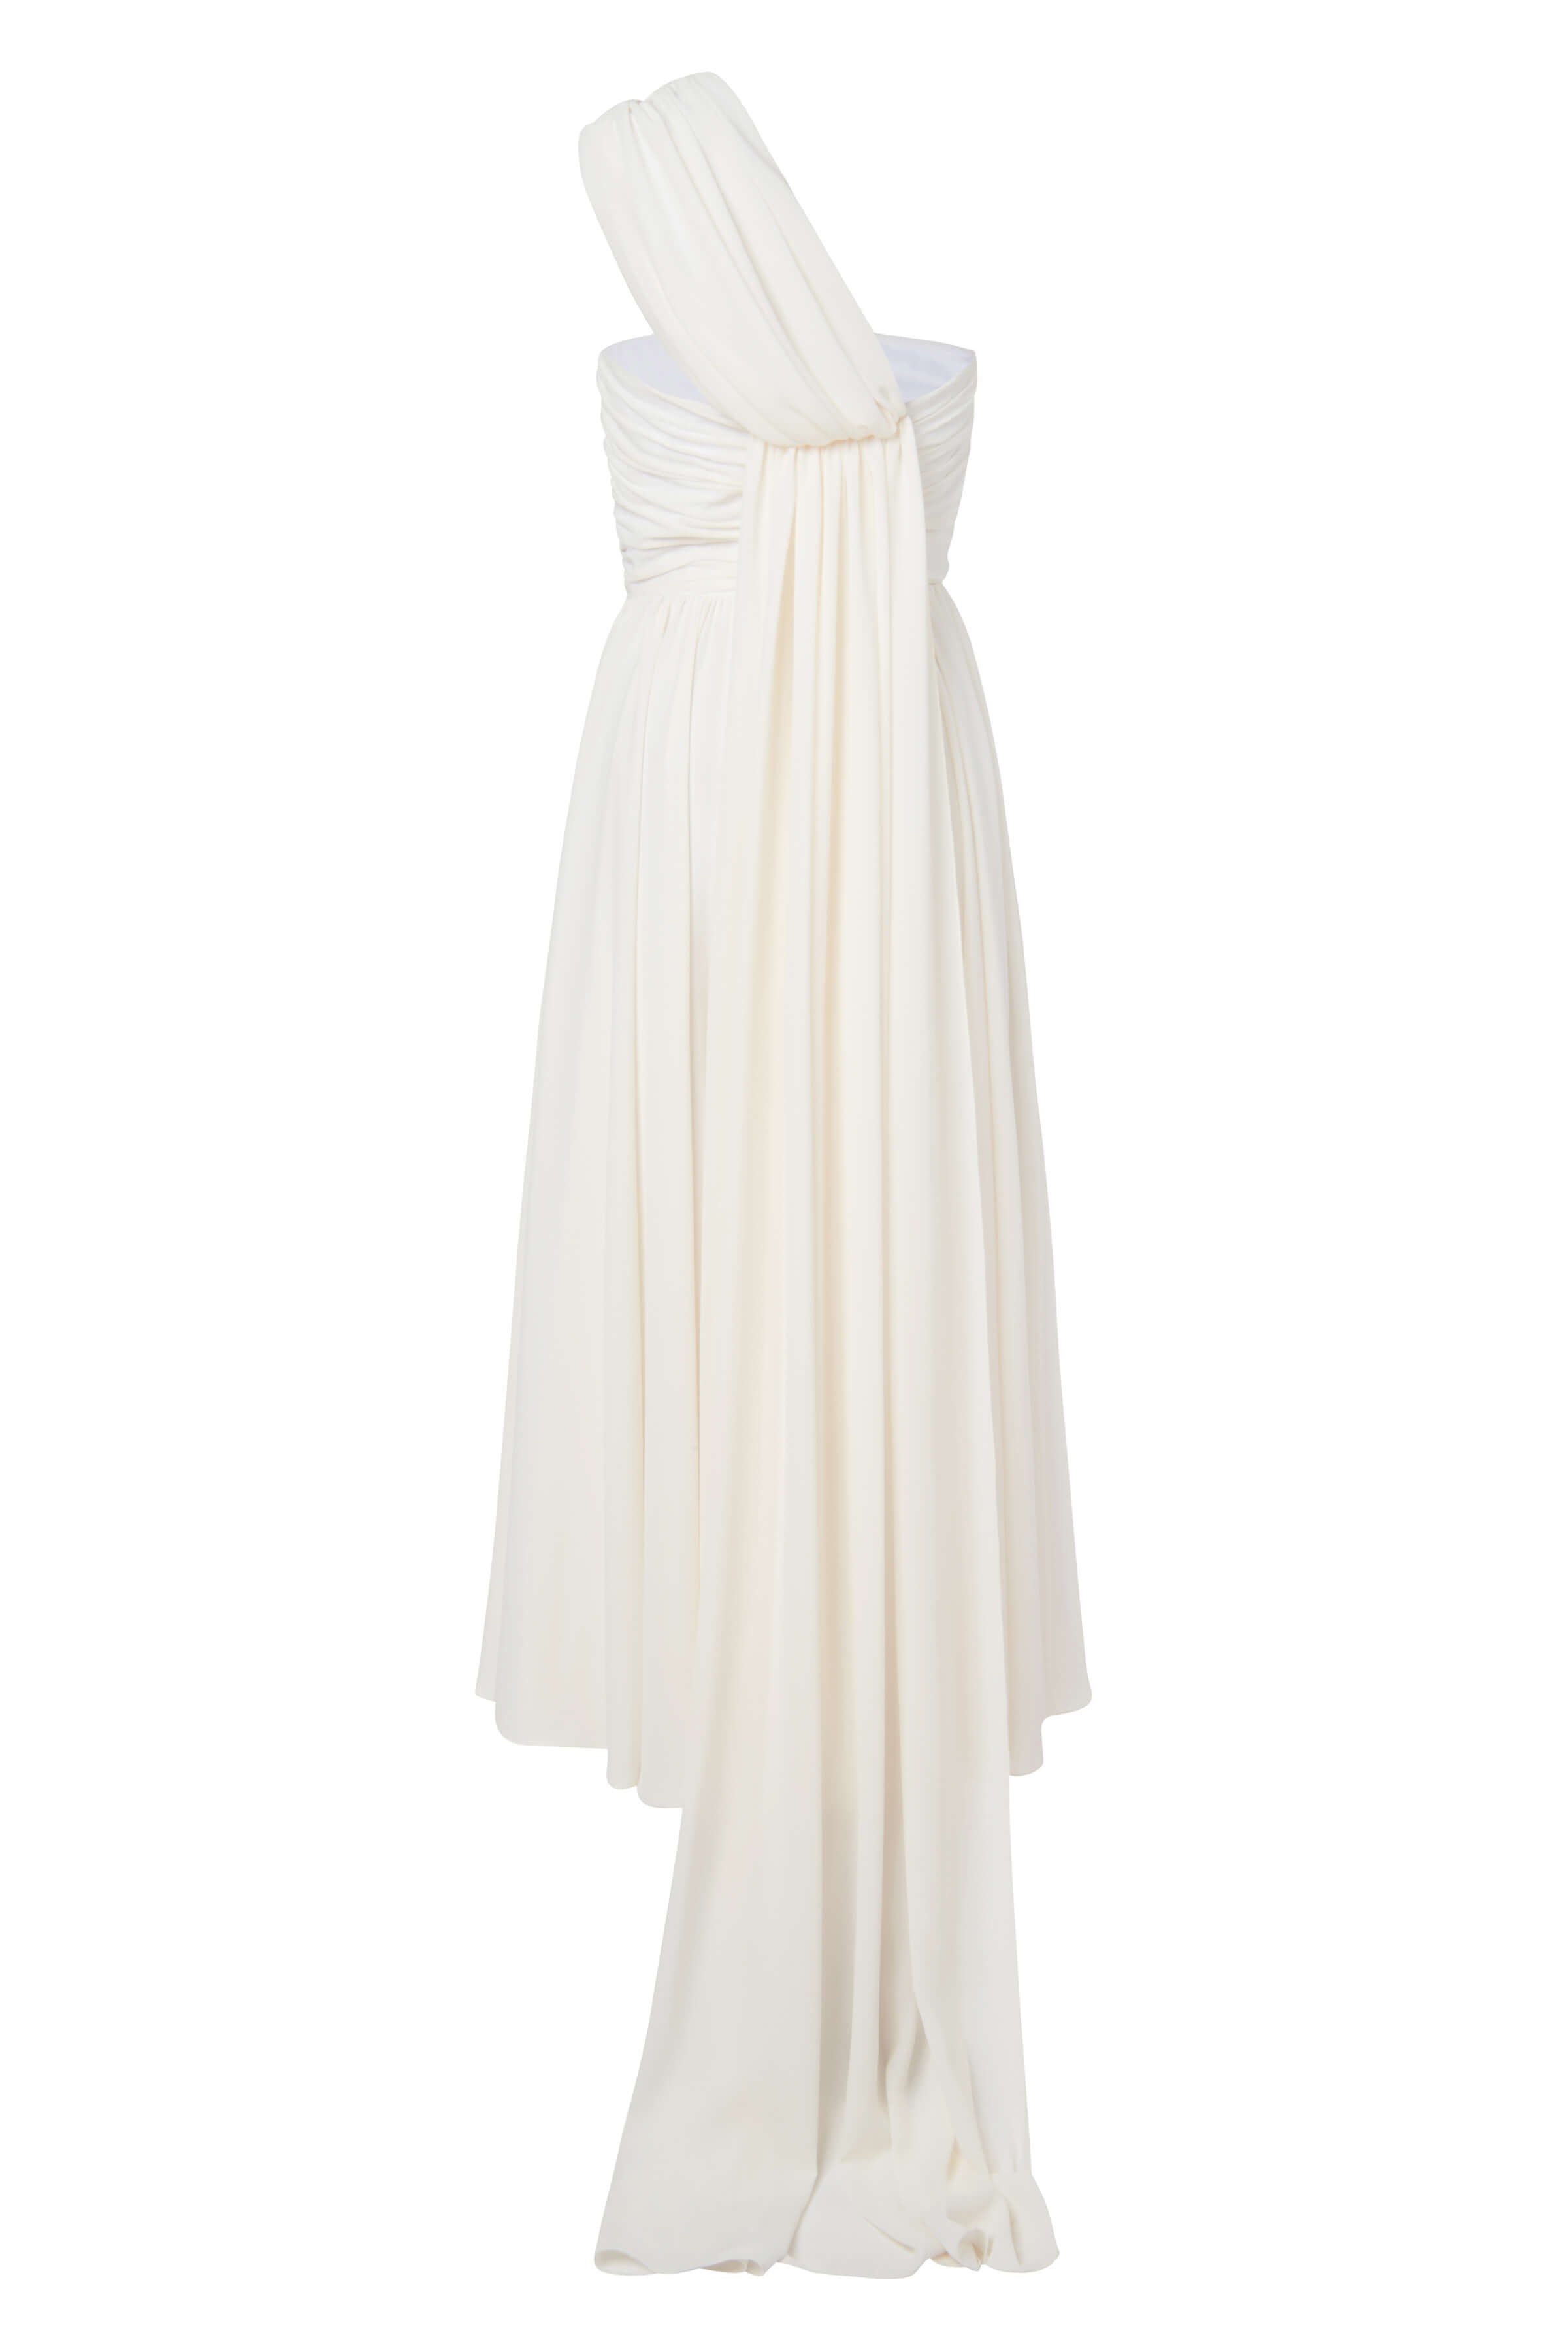 Rosalind White One Shoulder Dress